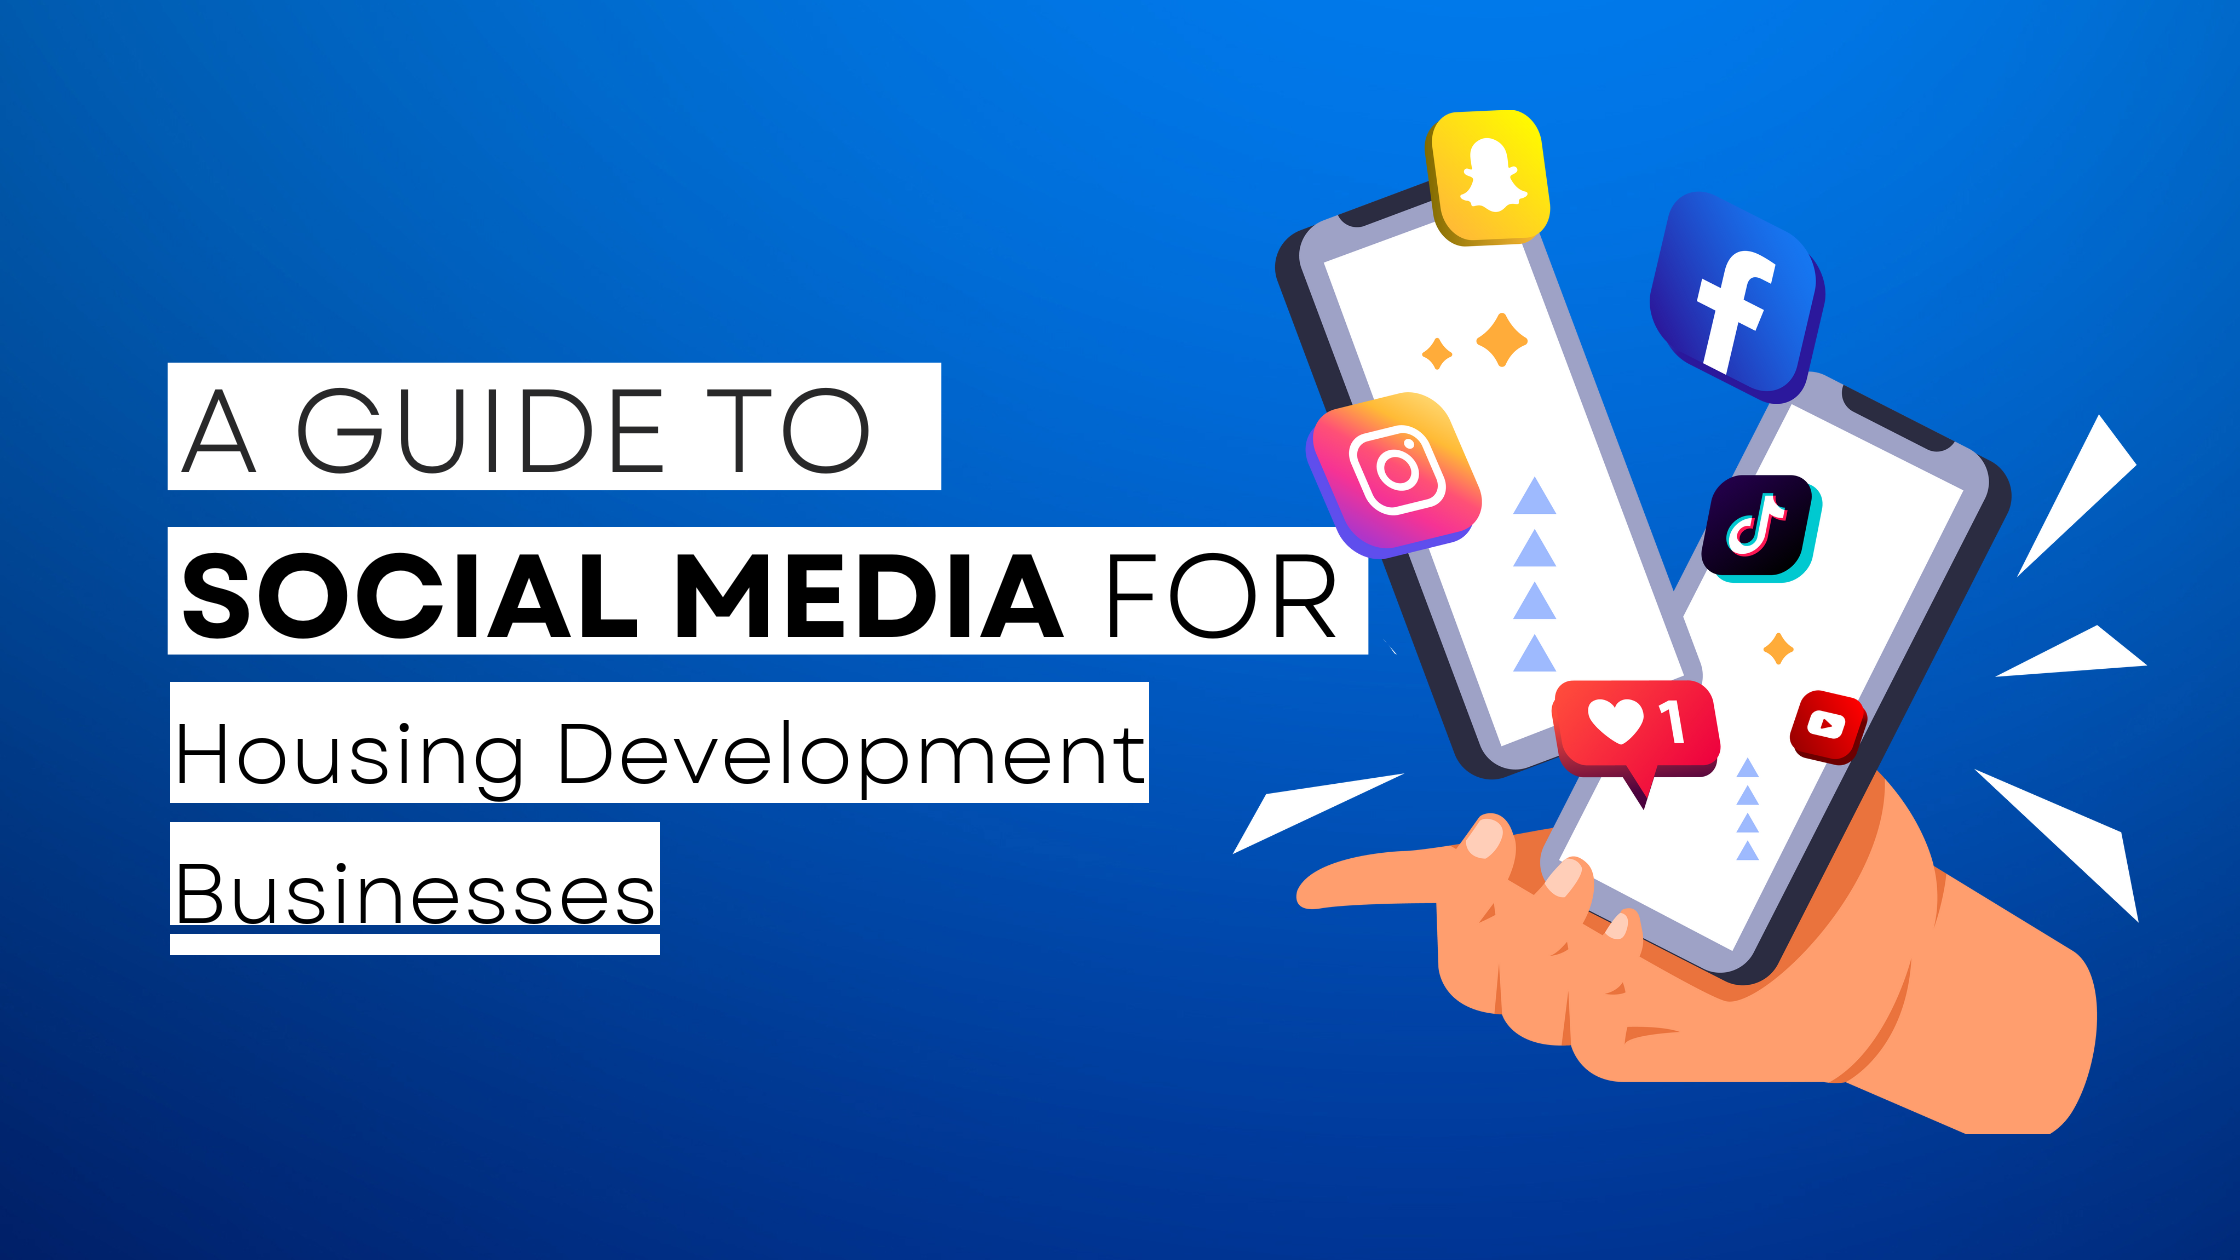 How to start Housing Development on social media